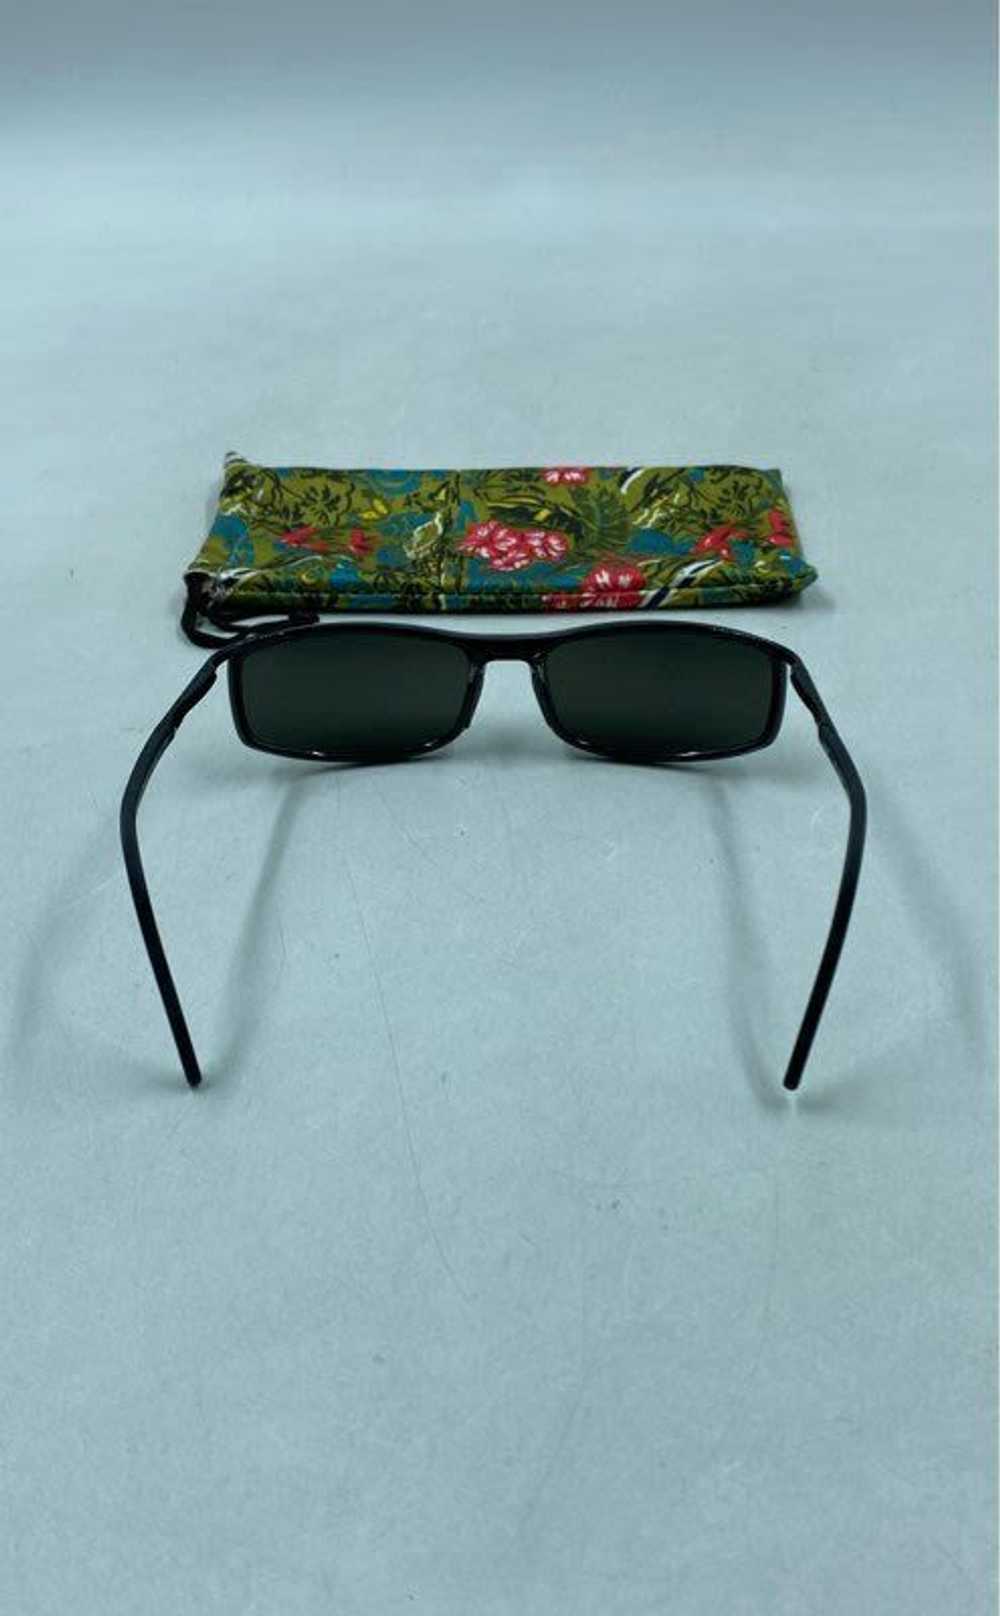 Maui Wear Maui Black Sunglasses - Size One Size - image 4